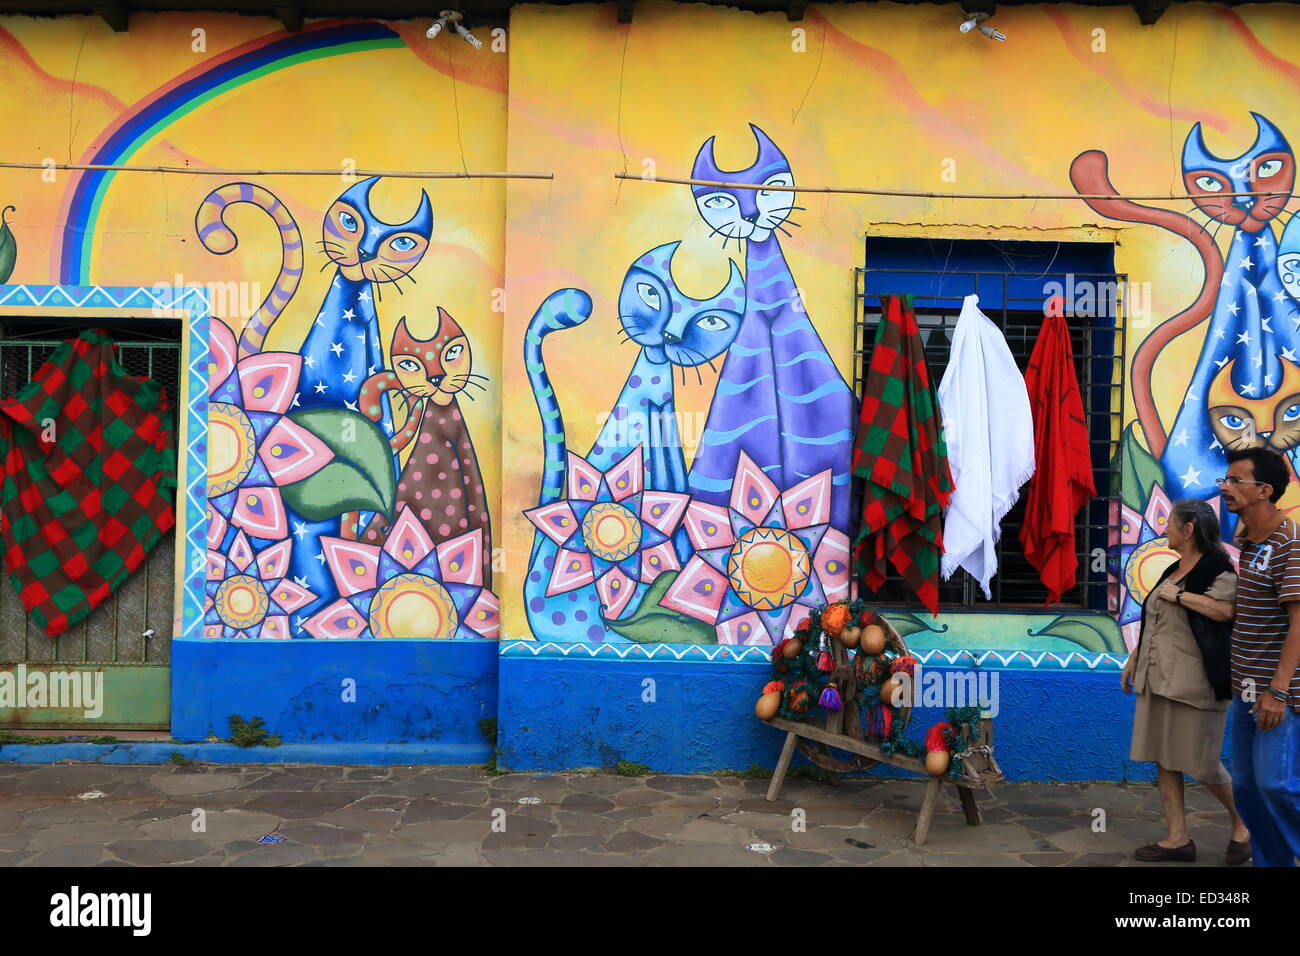 Deux personnes locales en passant devant une peinture murale aux couleurs vives peintes sur les murs d'une rue de Ataco, Ahuachapán, El Salvador. Banque D'Images